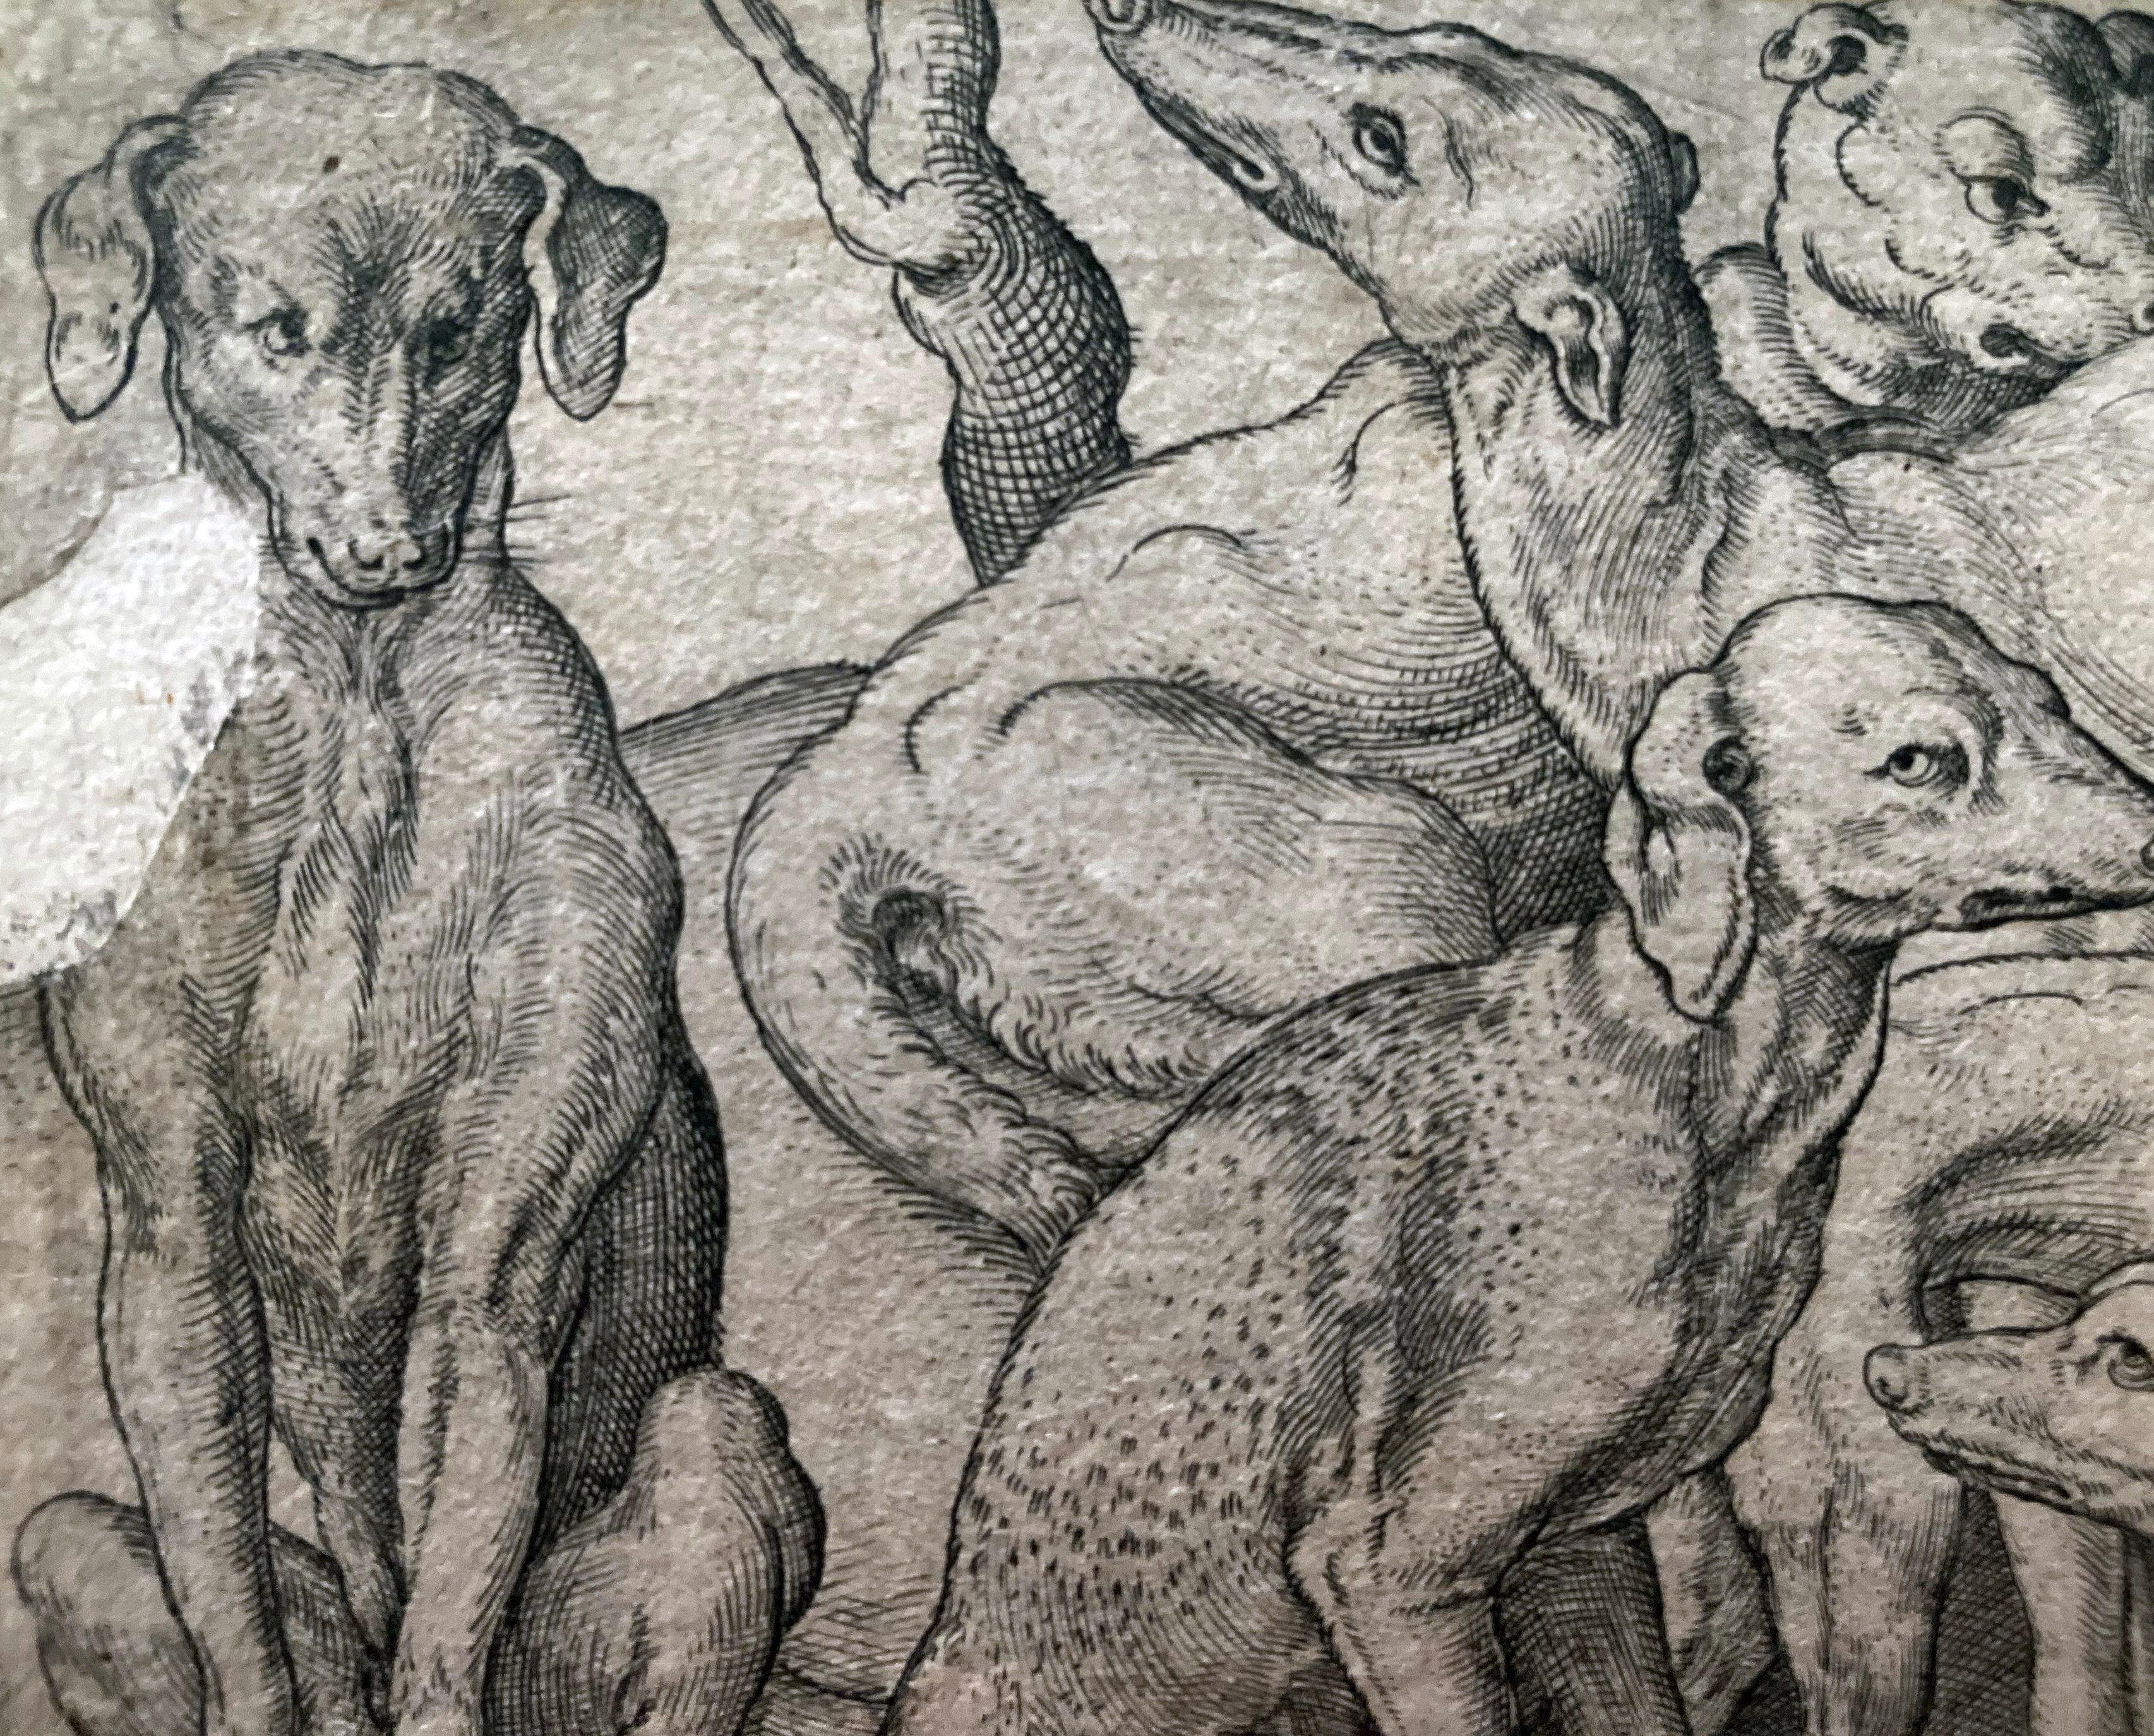 Kupferstich des Künstlers Virgil Solis, Sechs Hunde; stehend, liegend und sitzend zwischen Bäumen.
Kupferstich, angefertigt von Virgil Solis. 
Deutsch, um 1530-1562. 
Signiert mit dem Monogramm "VS" unten links ineinander